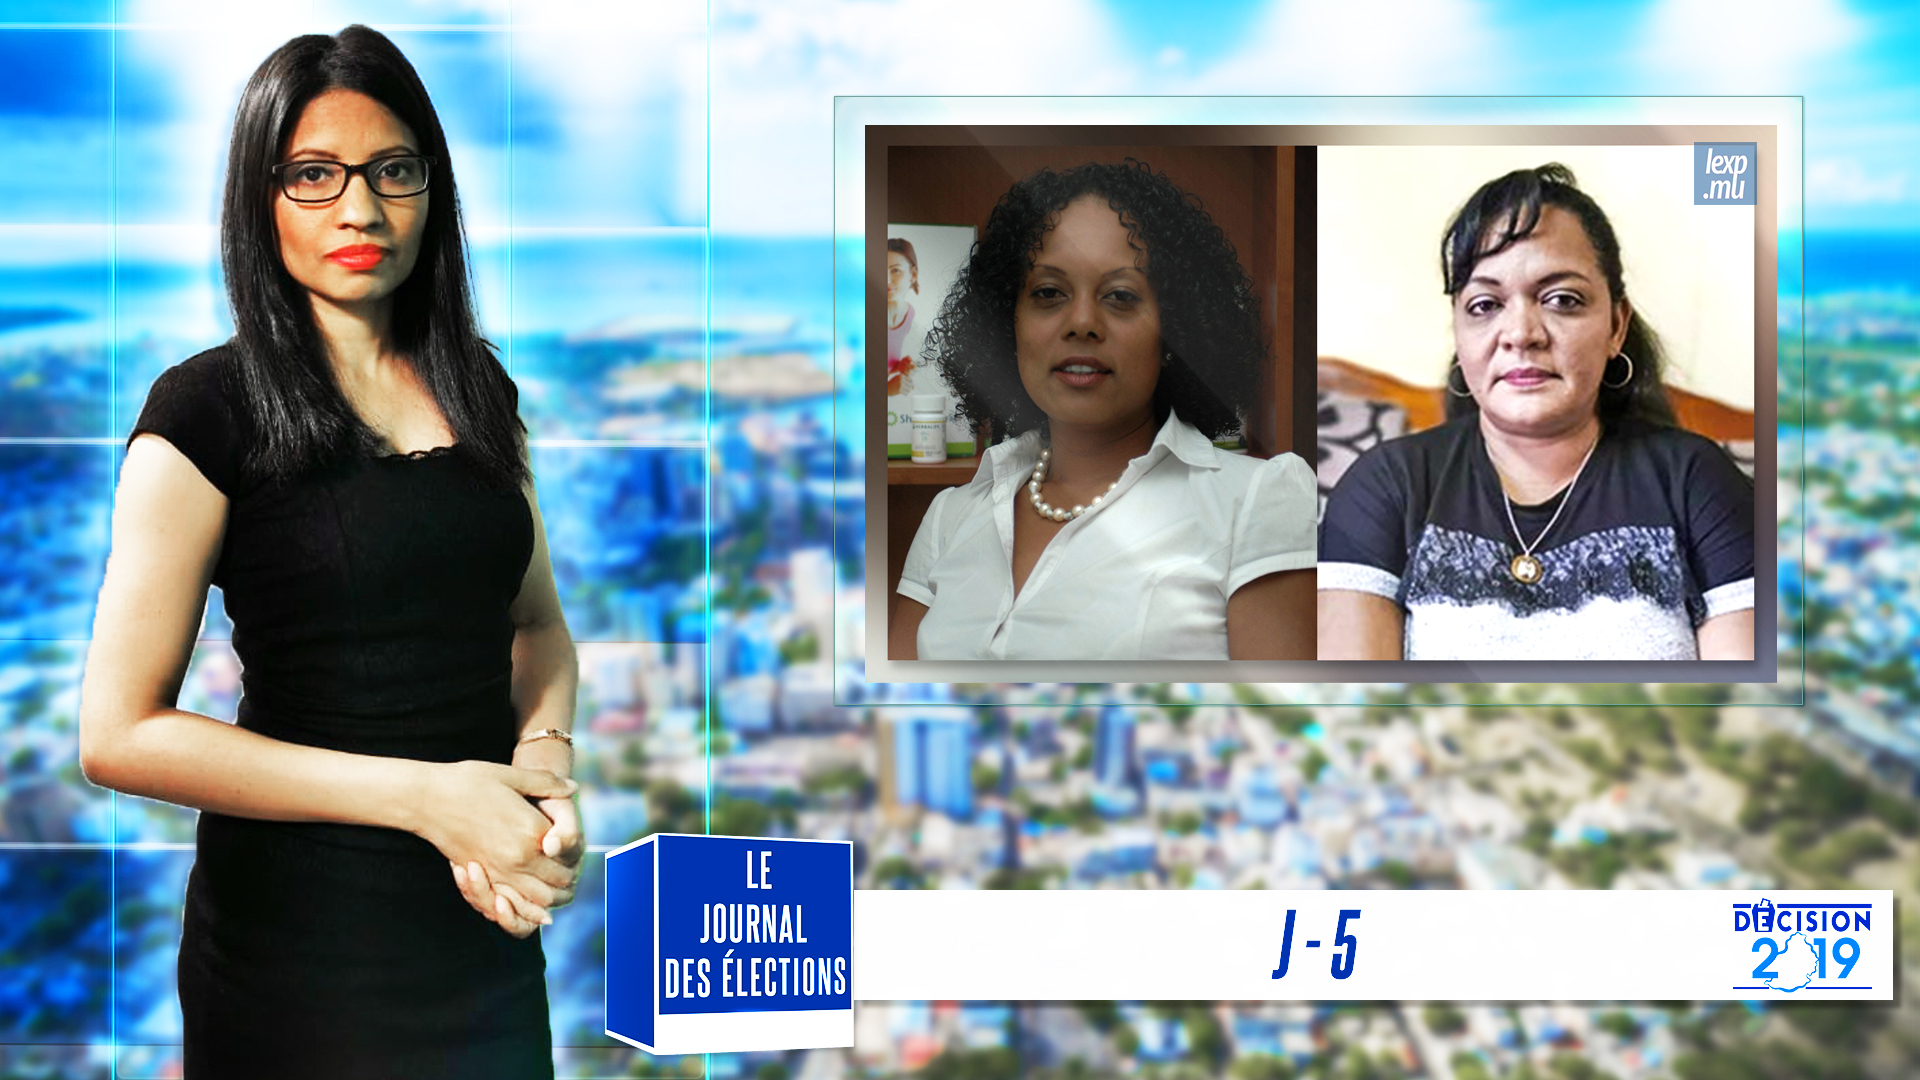 Le Journal des Elections | J-5: Les victimes collatérales de la campagne témoignent